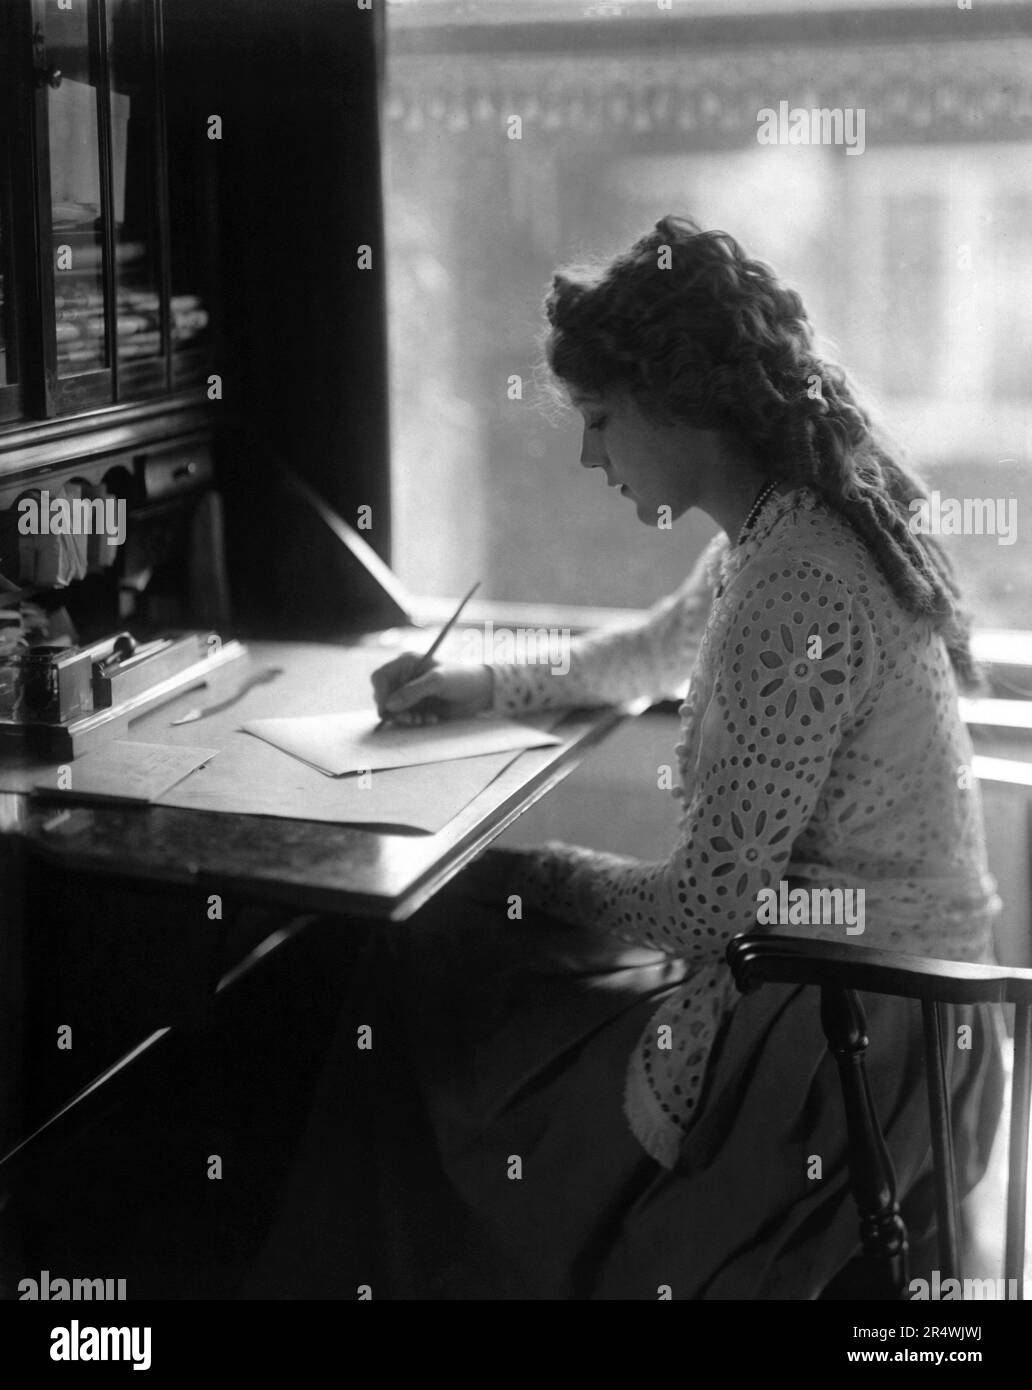 Photographie de Mary Pickford (1892-1979) actrice de cinéma canado-américain, co-fondateur du film studio United Artists et l'un des 36 fondateurs de l'Academy of Motion Picture Arts and Sciences. Datée 1929 Banque D'Images